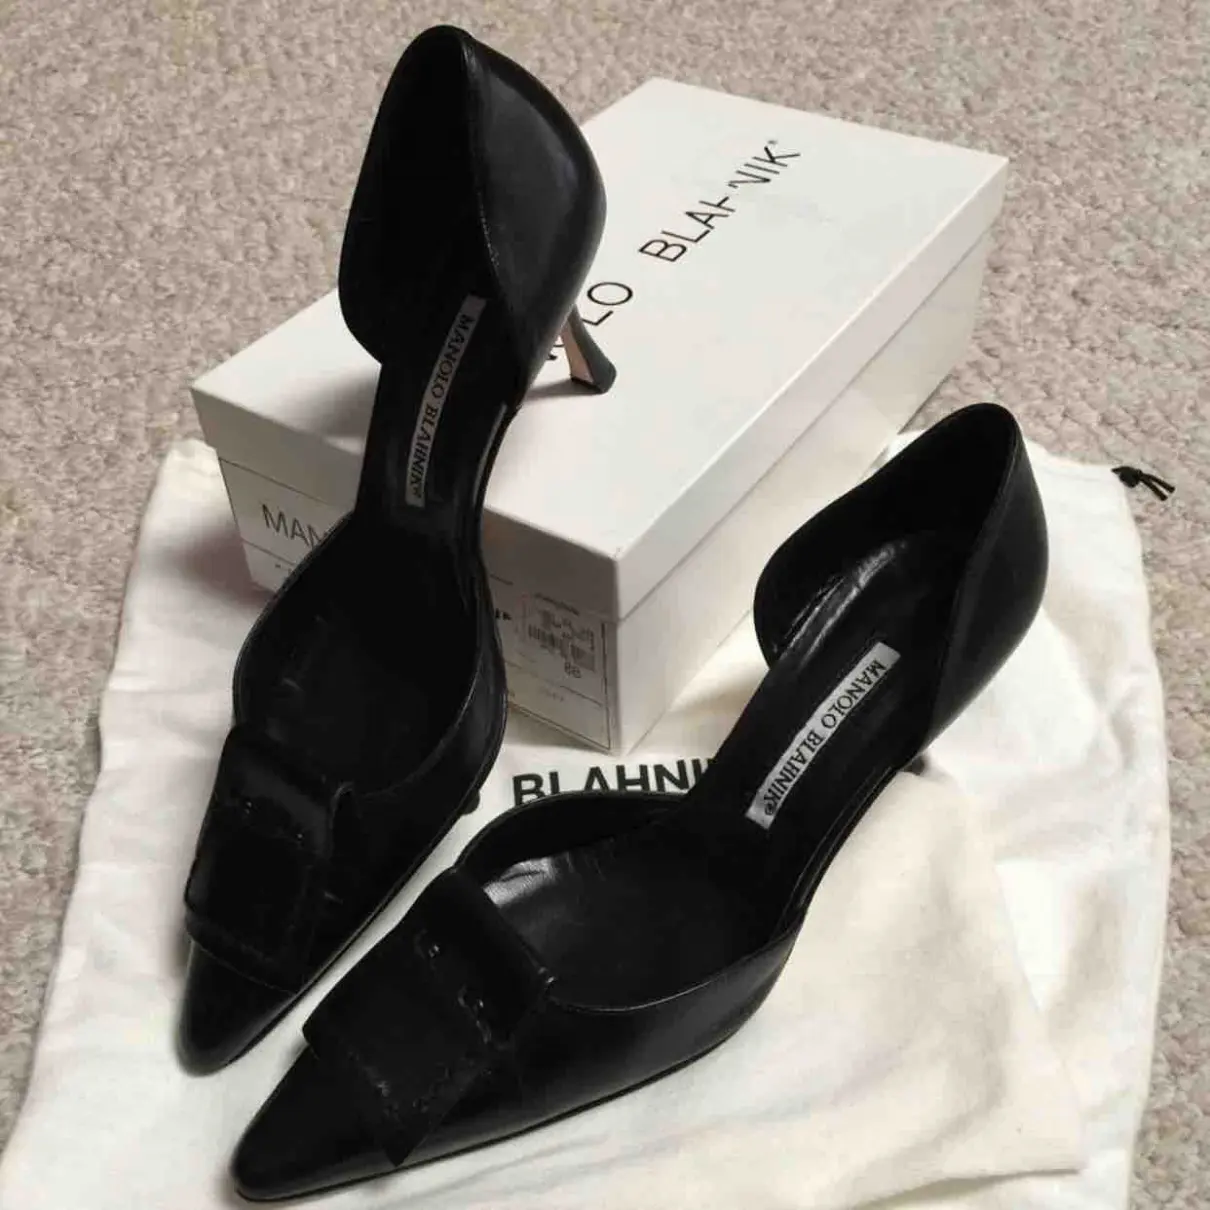 Leather heels Manolo Blahnik - Vintage